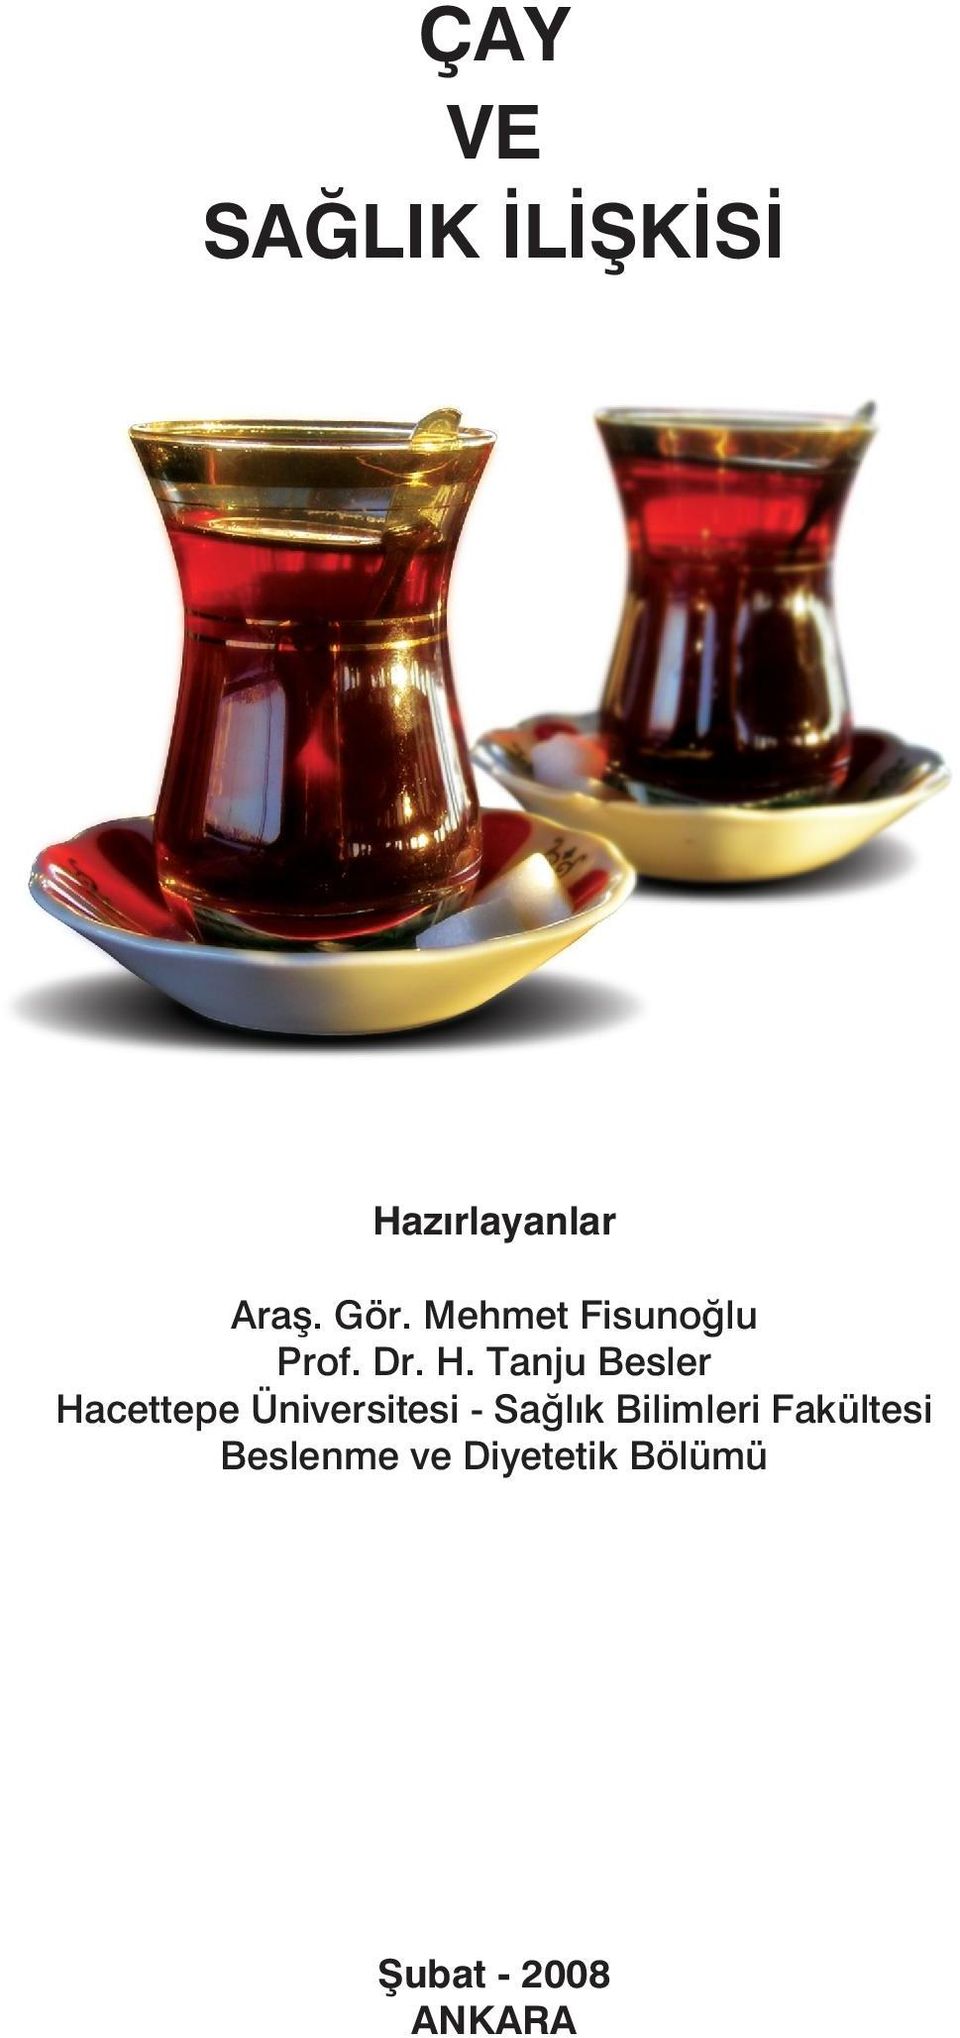 Tanju Besler Hacettepe Üniversitesi - Sağlık